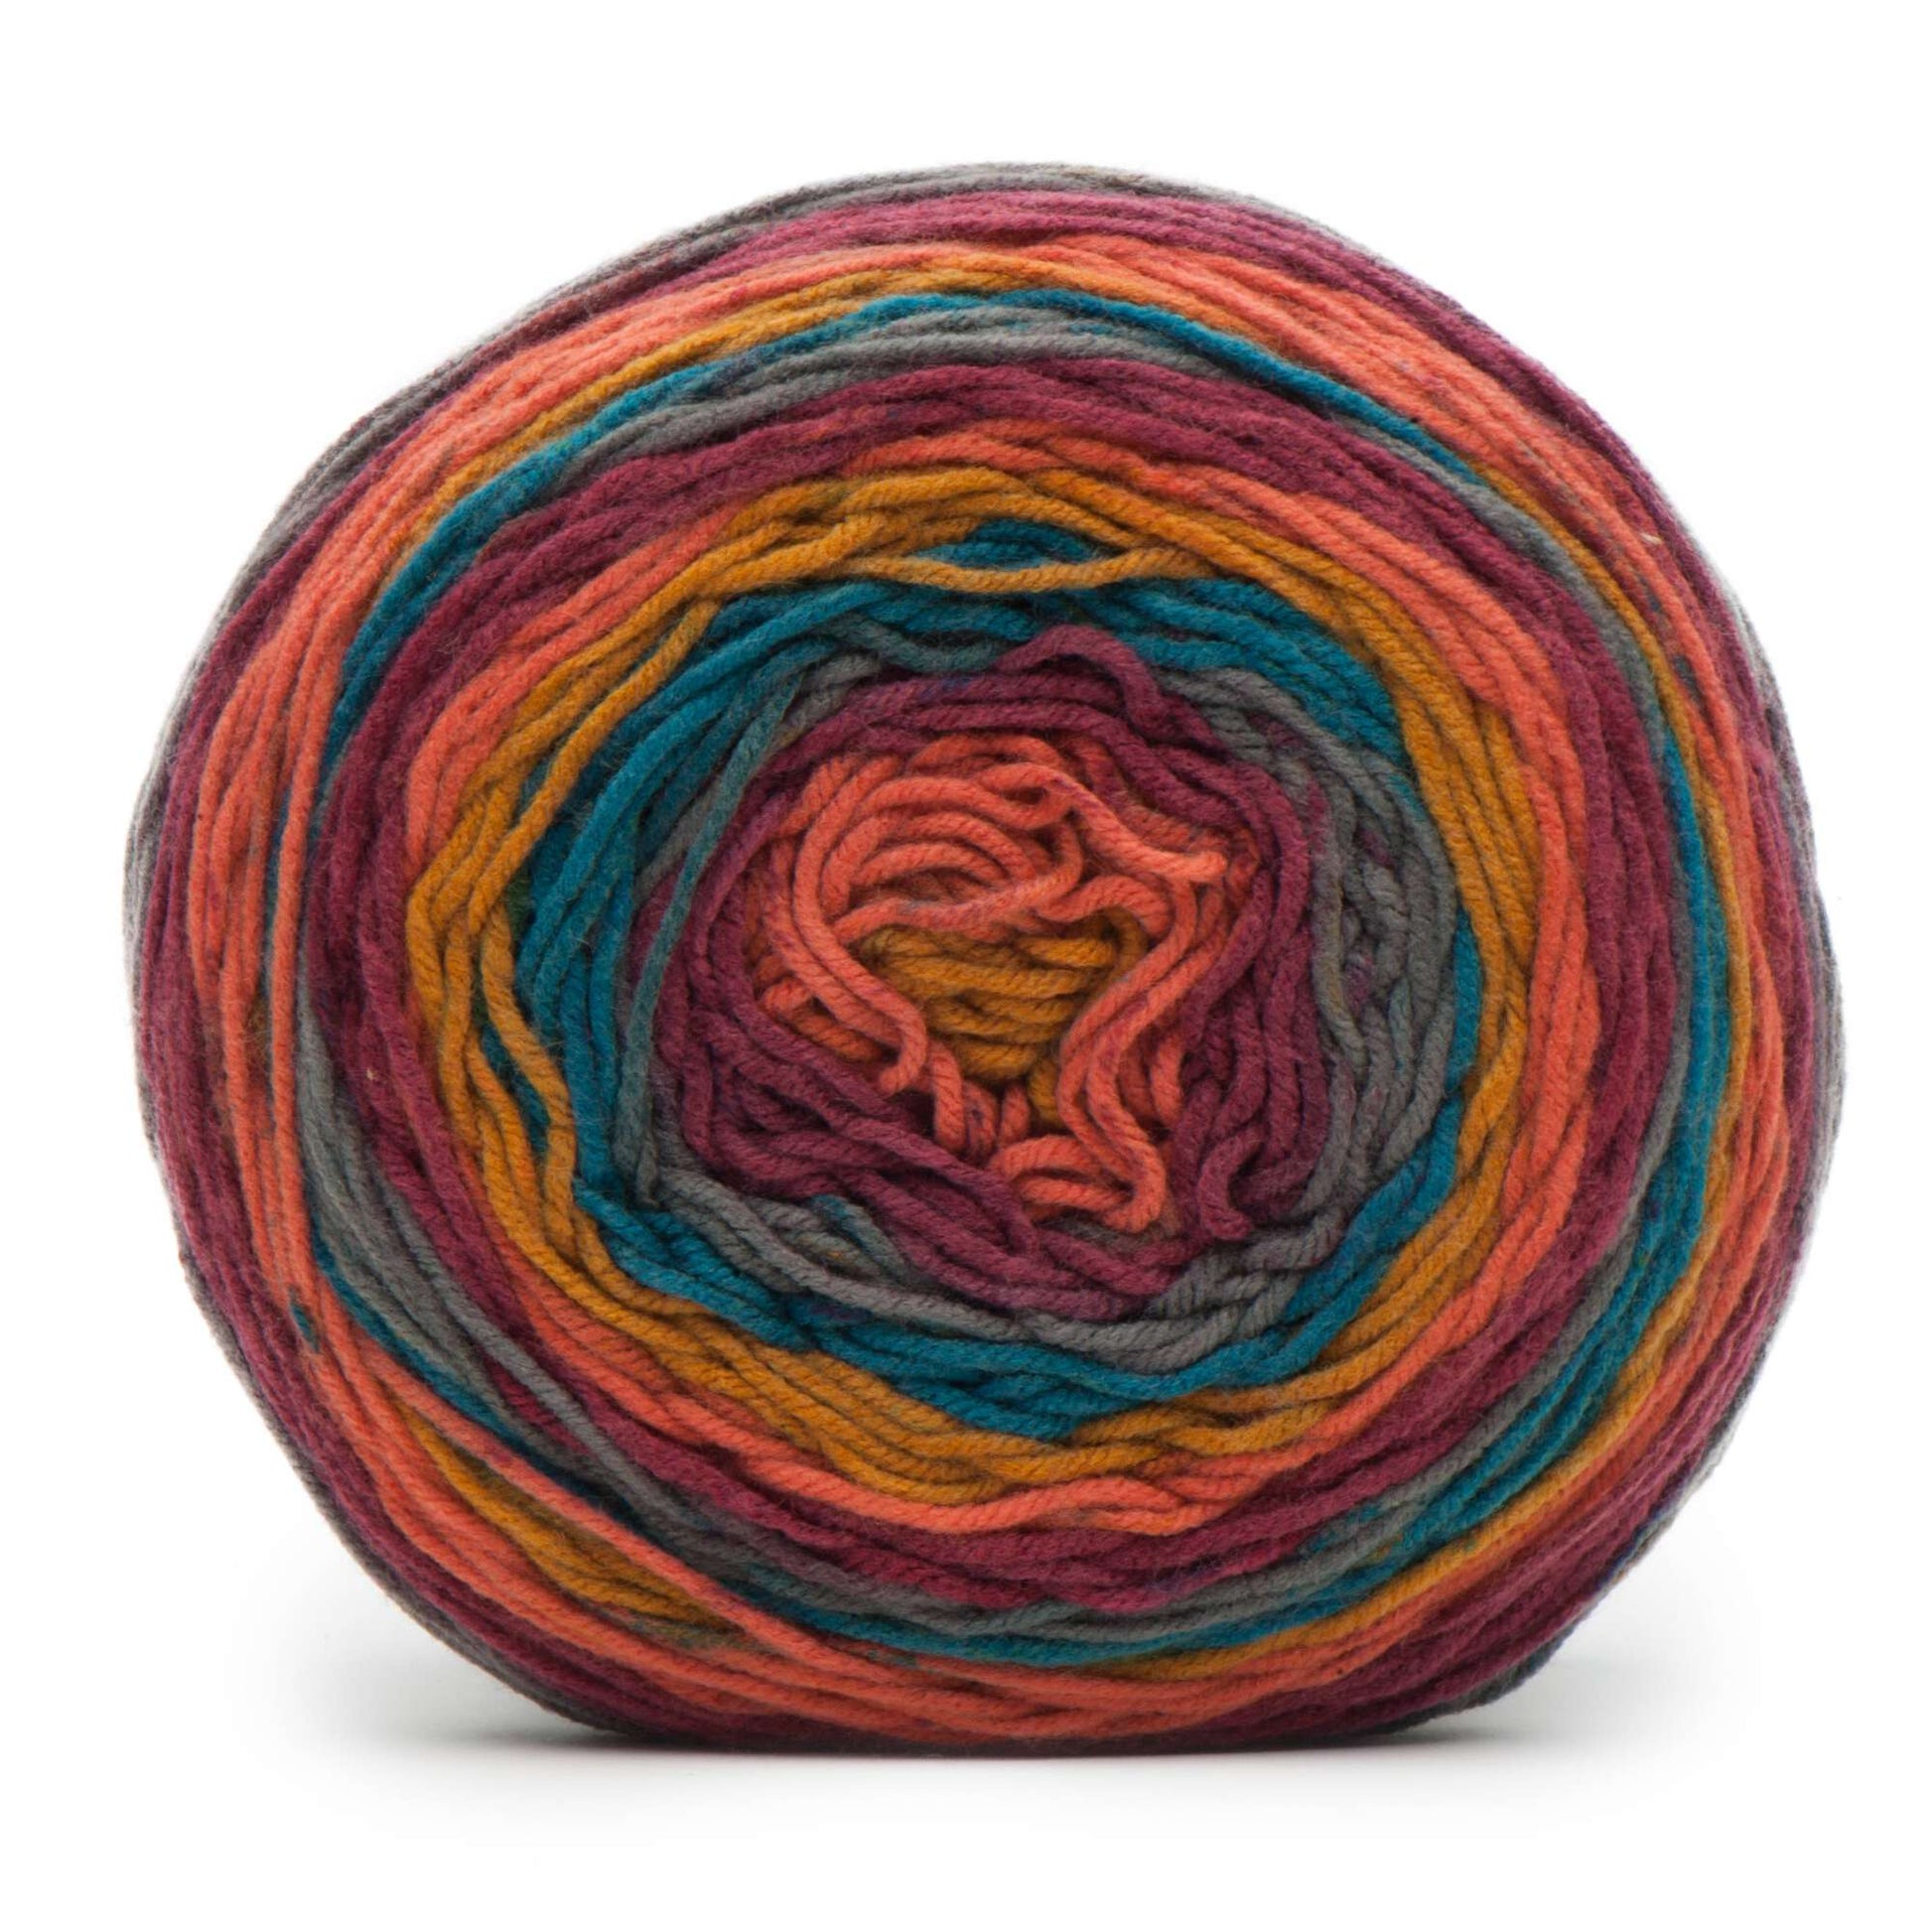 Caron Big Cakes Self Striping Yarn ~ 603 yd/551 m / 10.5oz/300 g Each  (Nightberry)